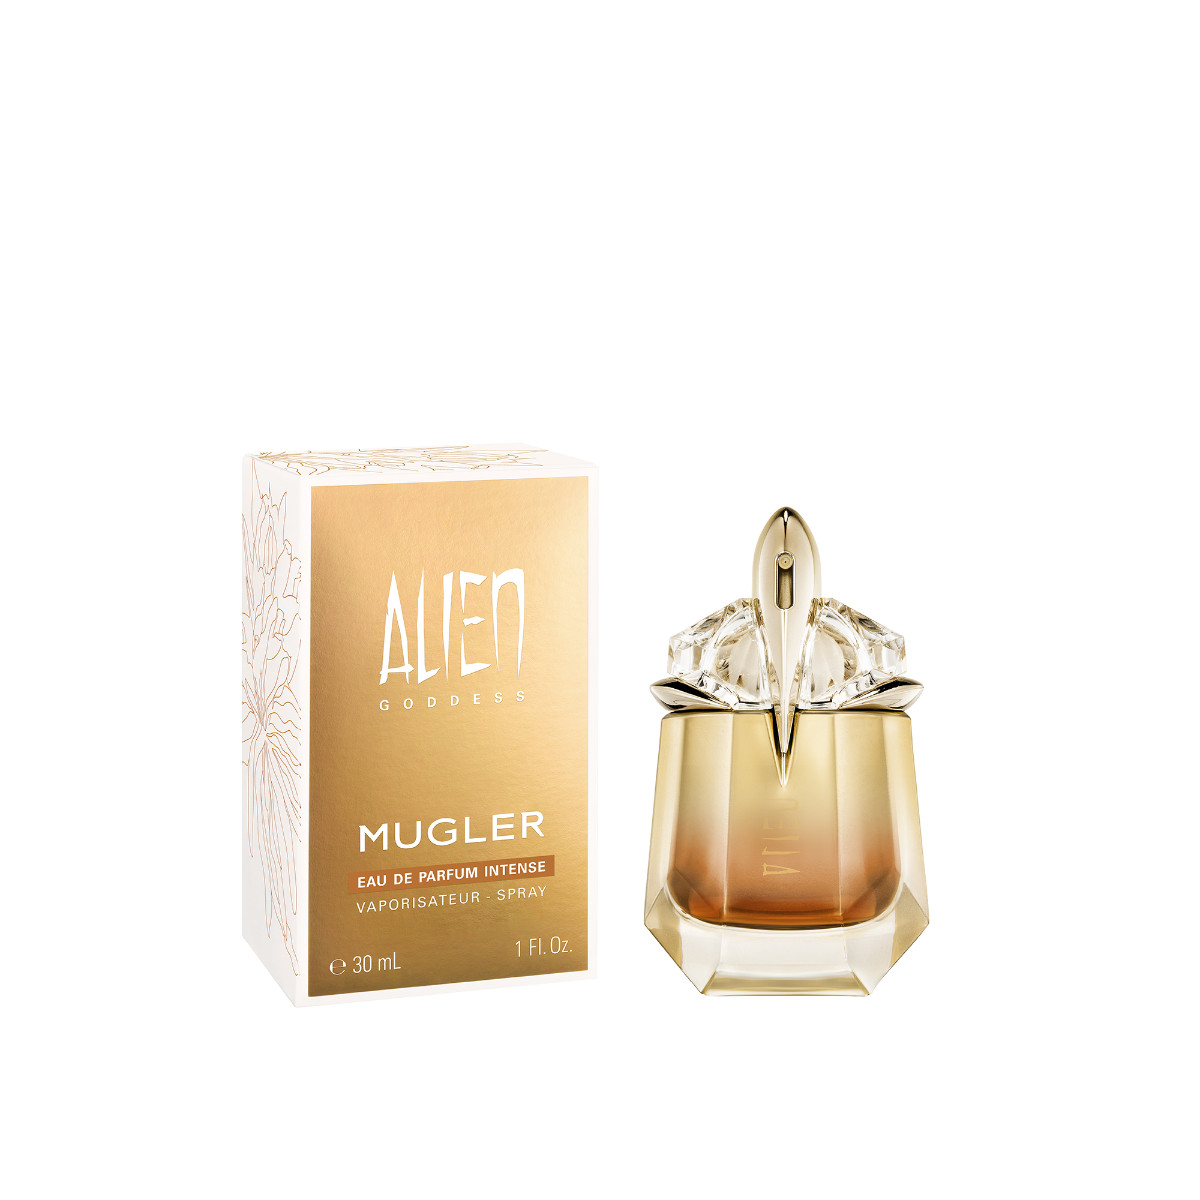 The New Intense Eau De Parfum From Mugler: Alien Goddess